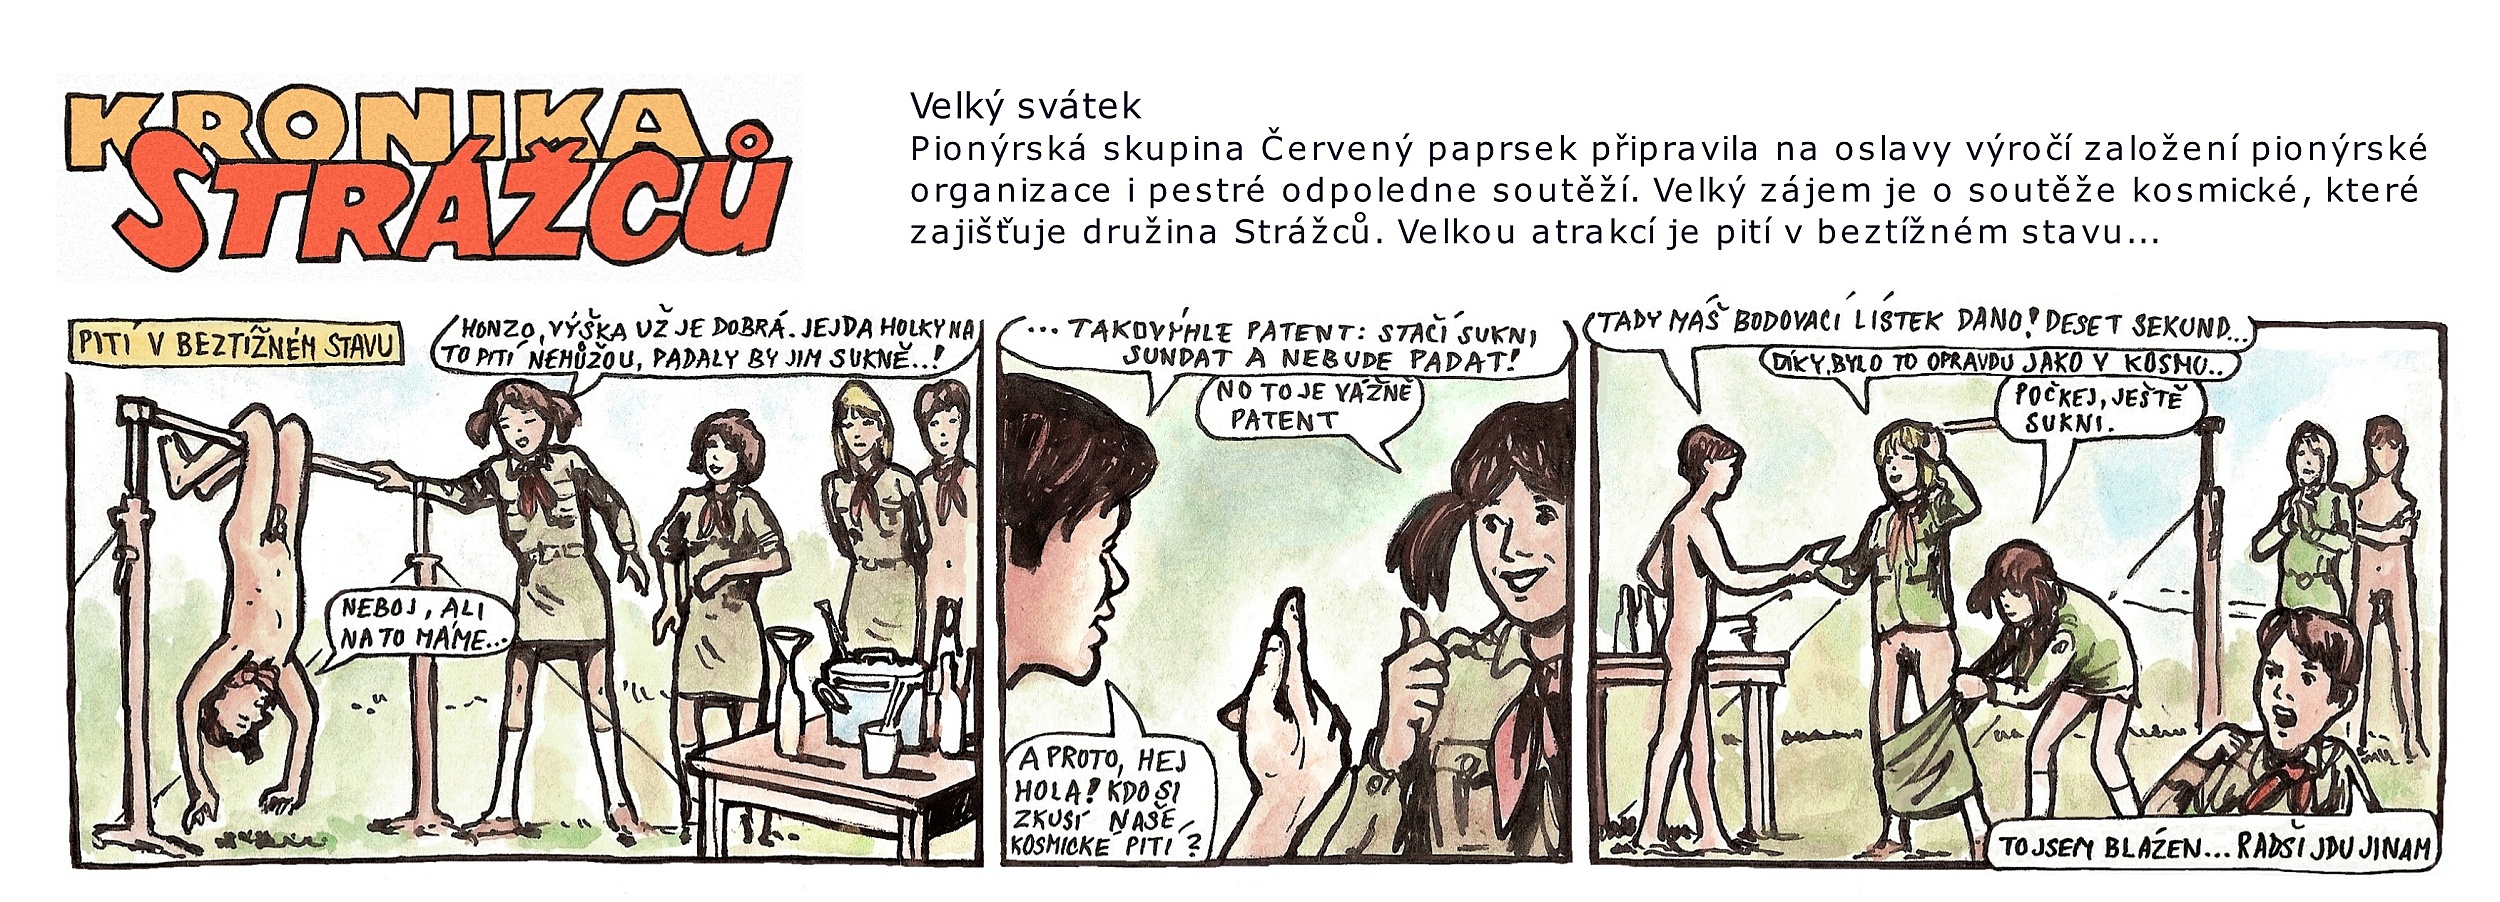 FKK Kronika Strážců - kosmické pití